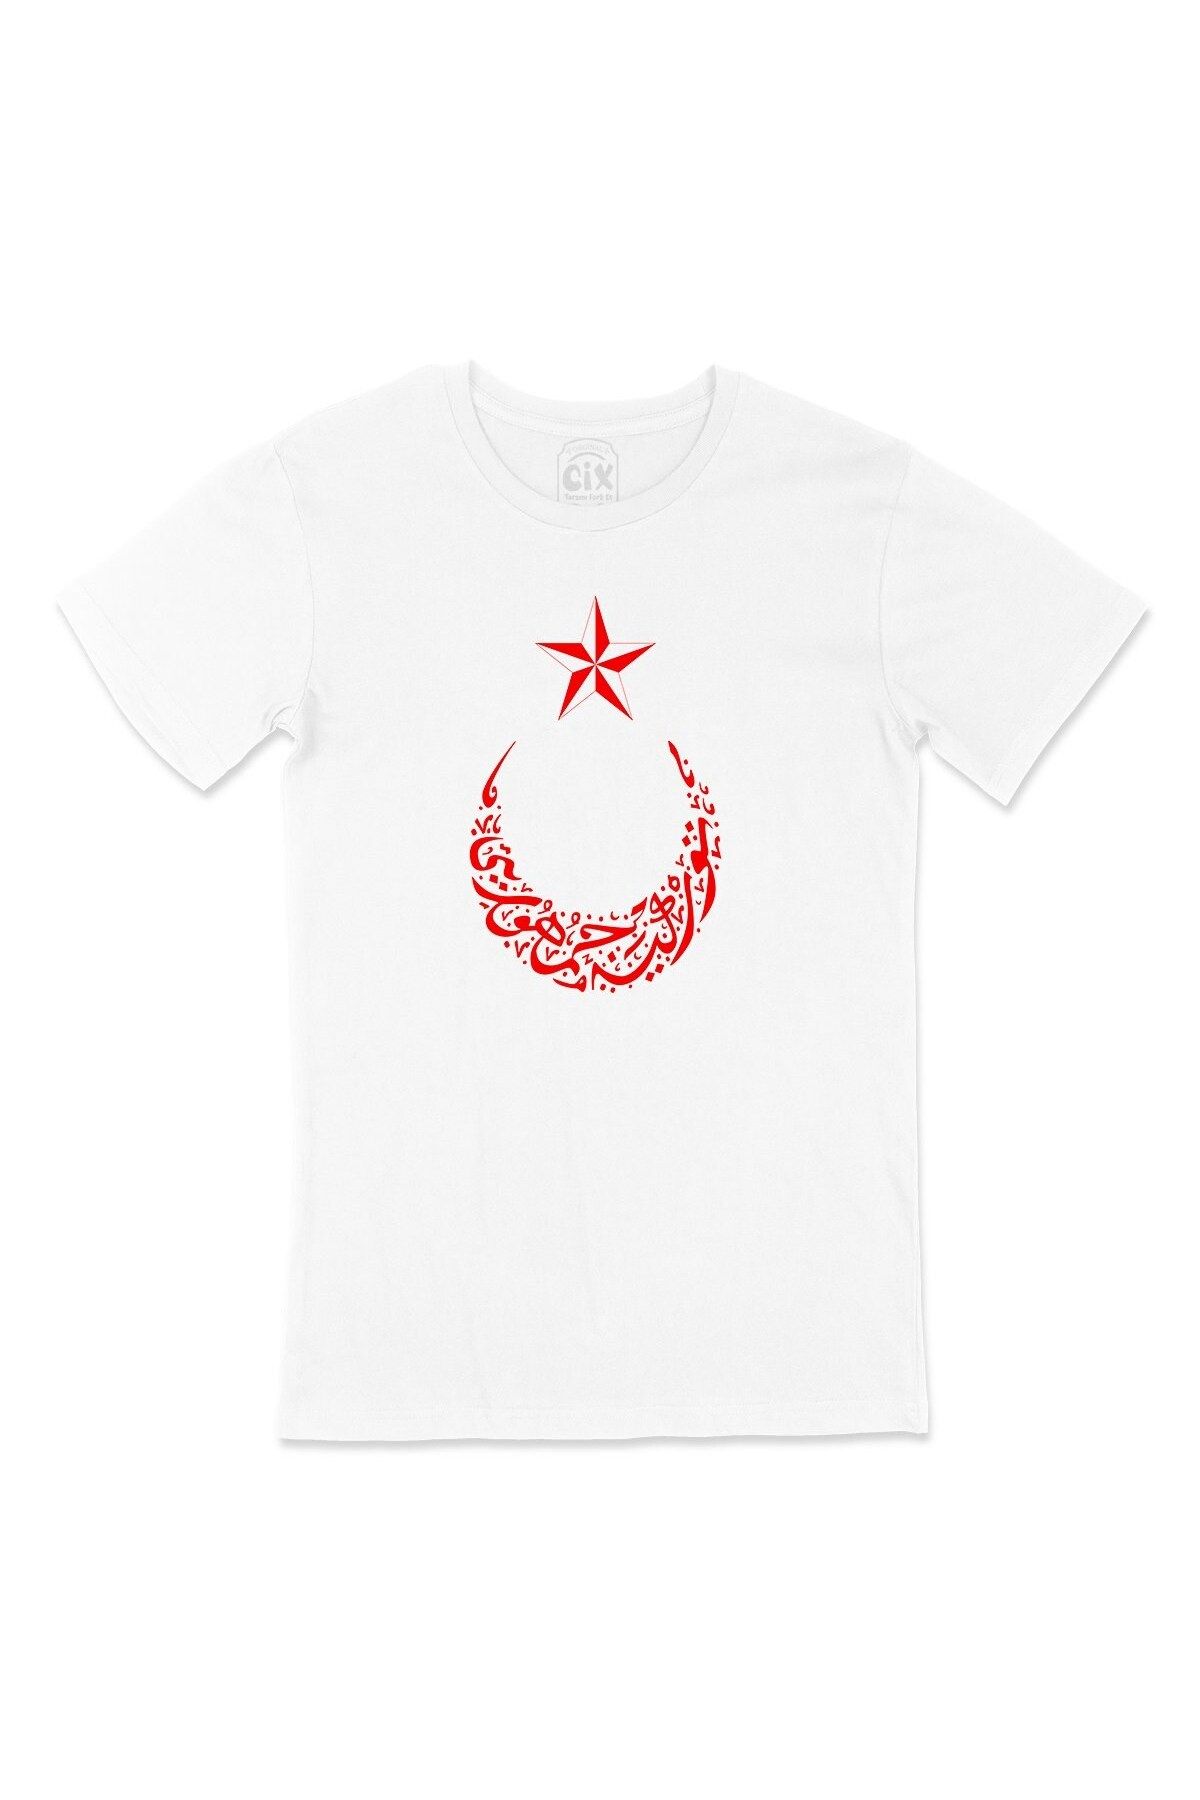 Cix Osmanlıca Türkiye Cumhuriyeti Ay Yıldızlı Tişört